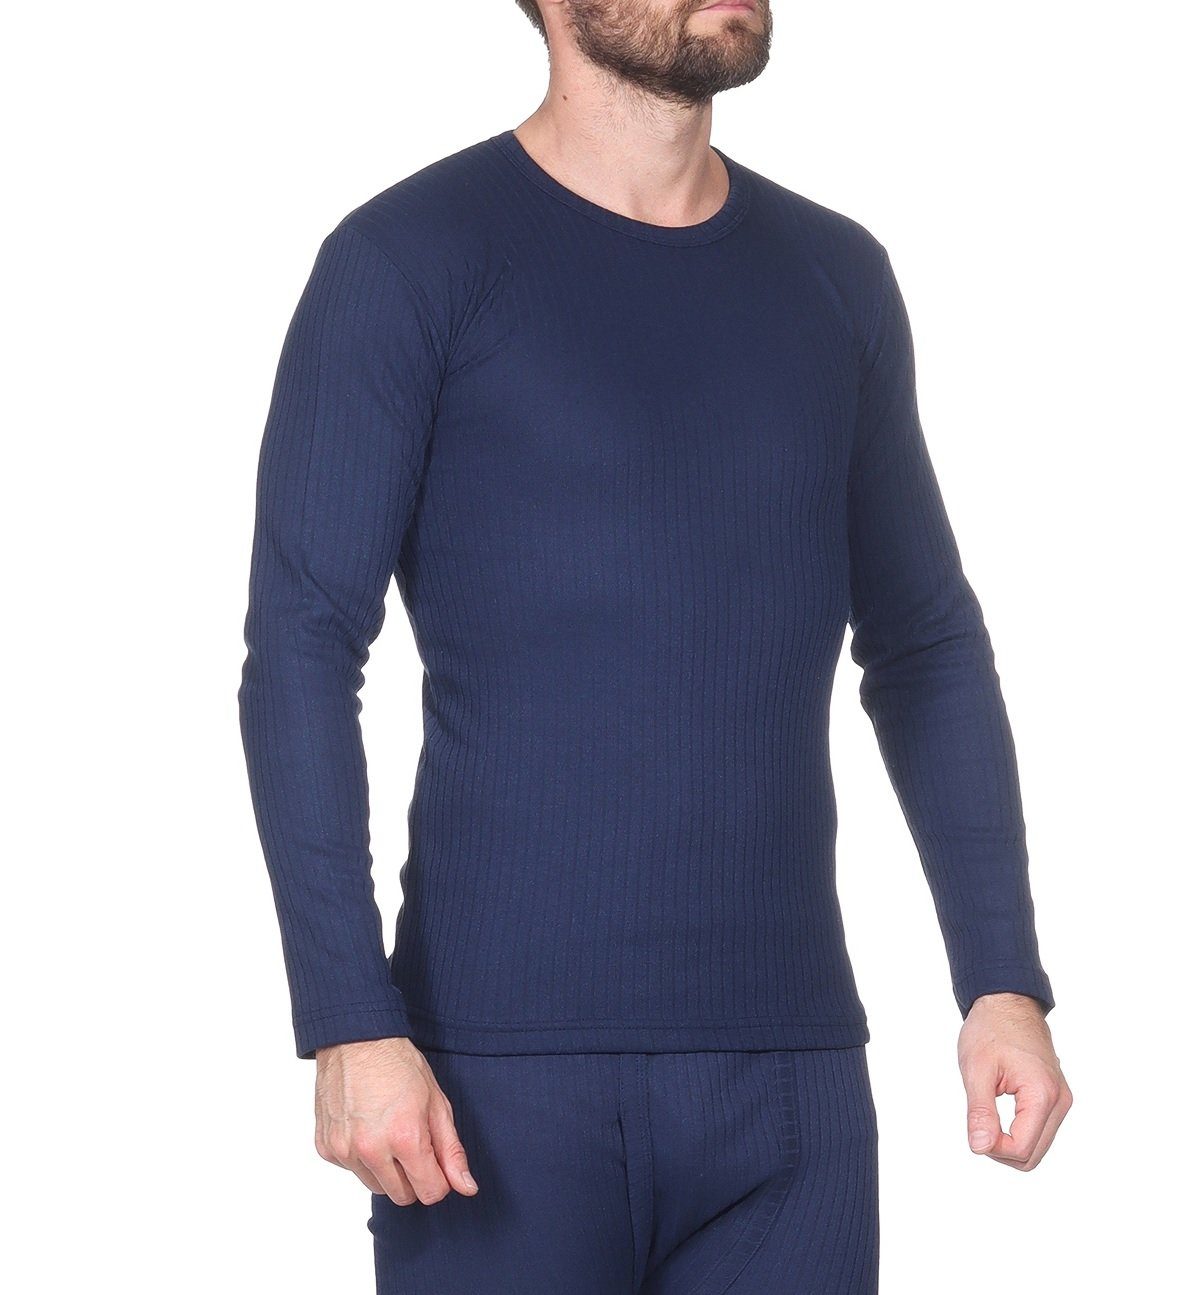 OriginalYou Thermounterhemd Funktionsunterwäsche 2 warme Unterziehhemden für Herren (2er-Pack) auch in großen Größen erhältlich, ideal für den Winterurlaub Blau